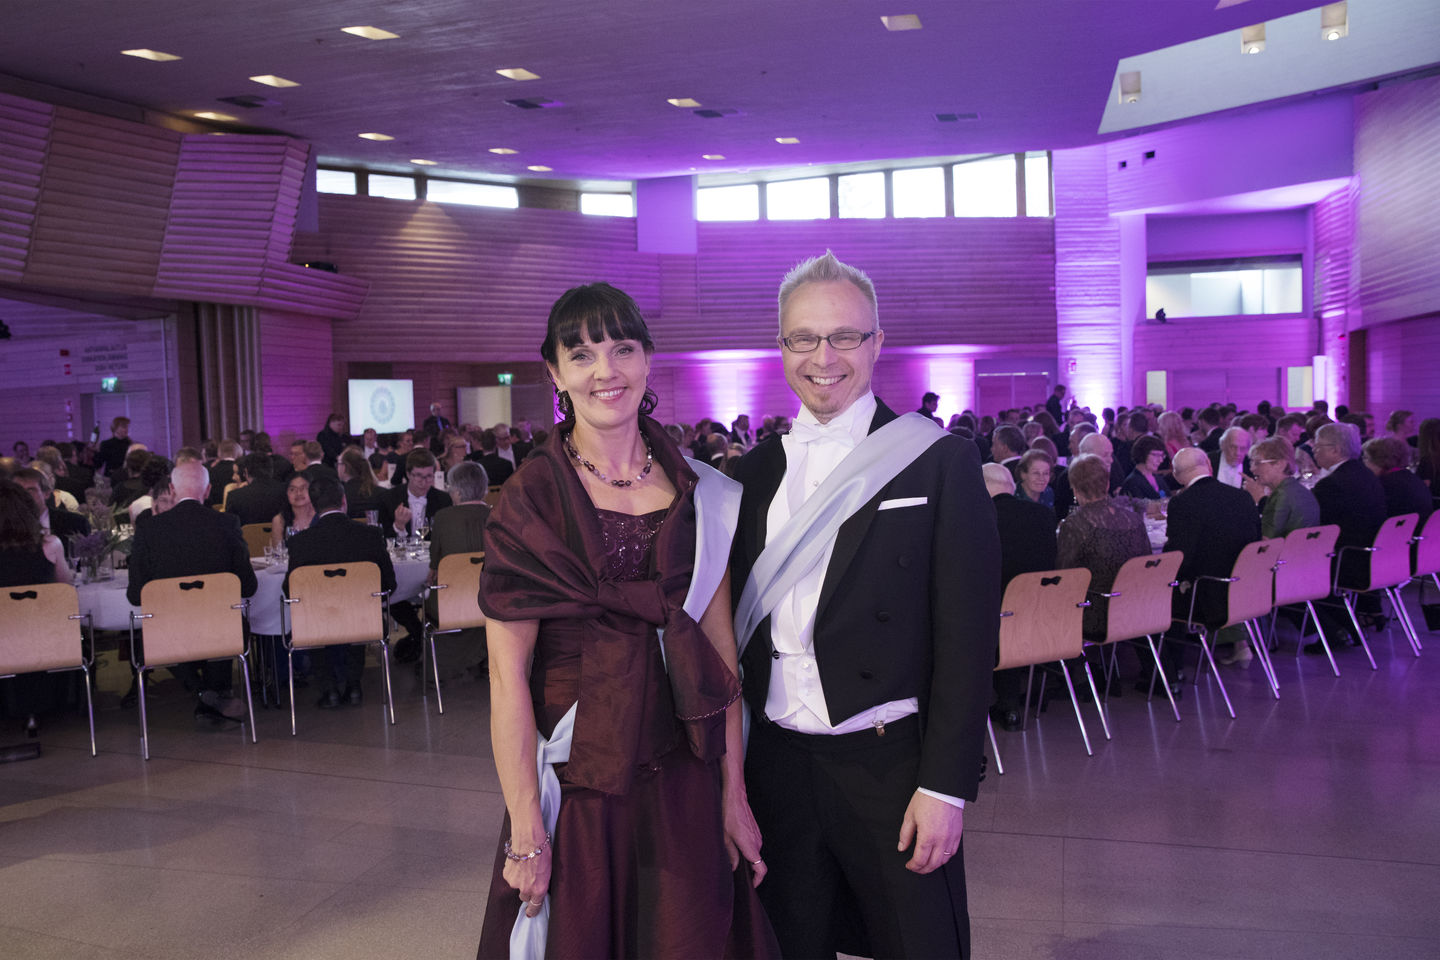 Masters of Ceremony, Heidi Salonen and Jarkko Niiranen